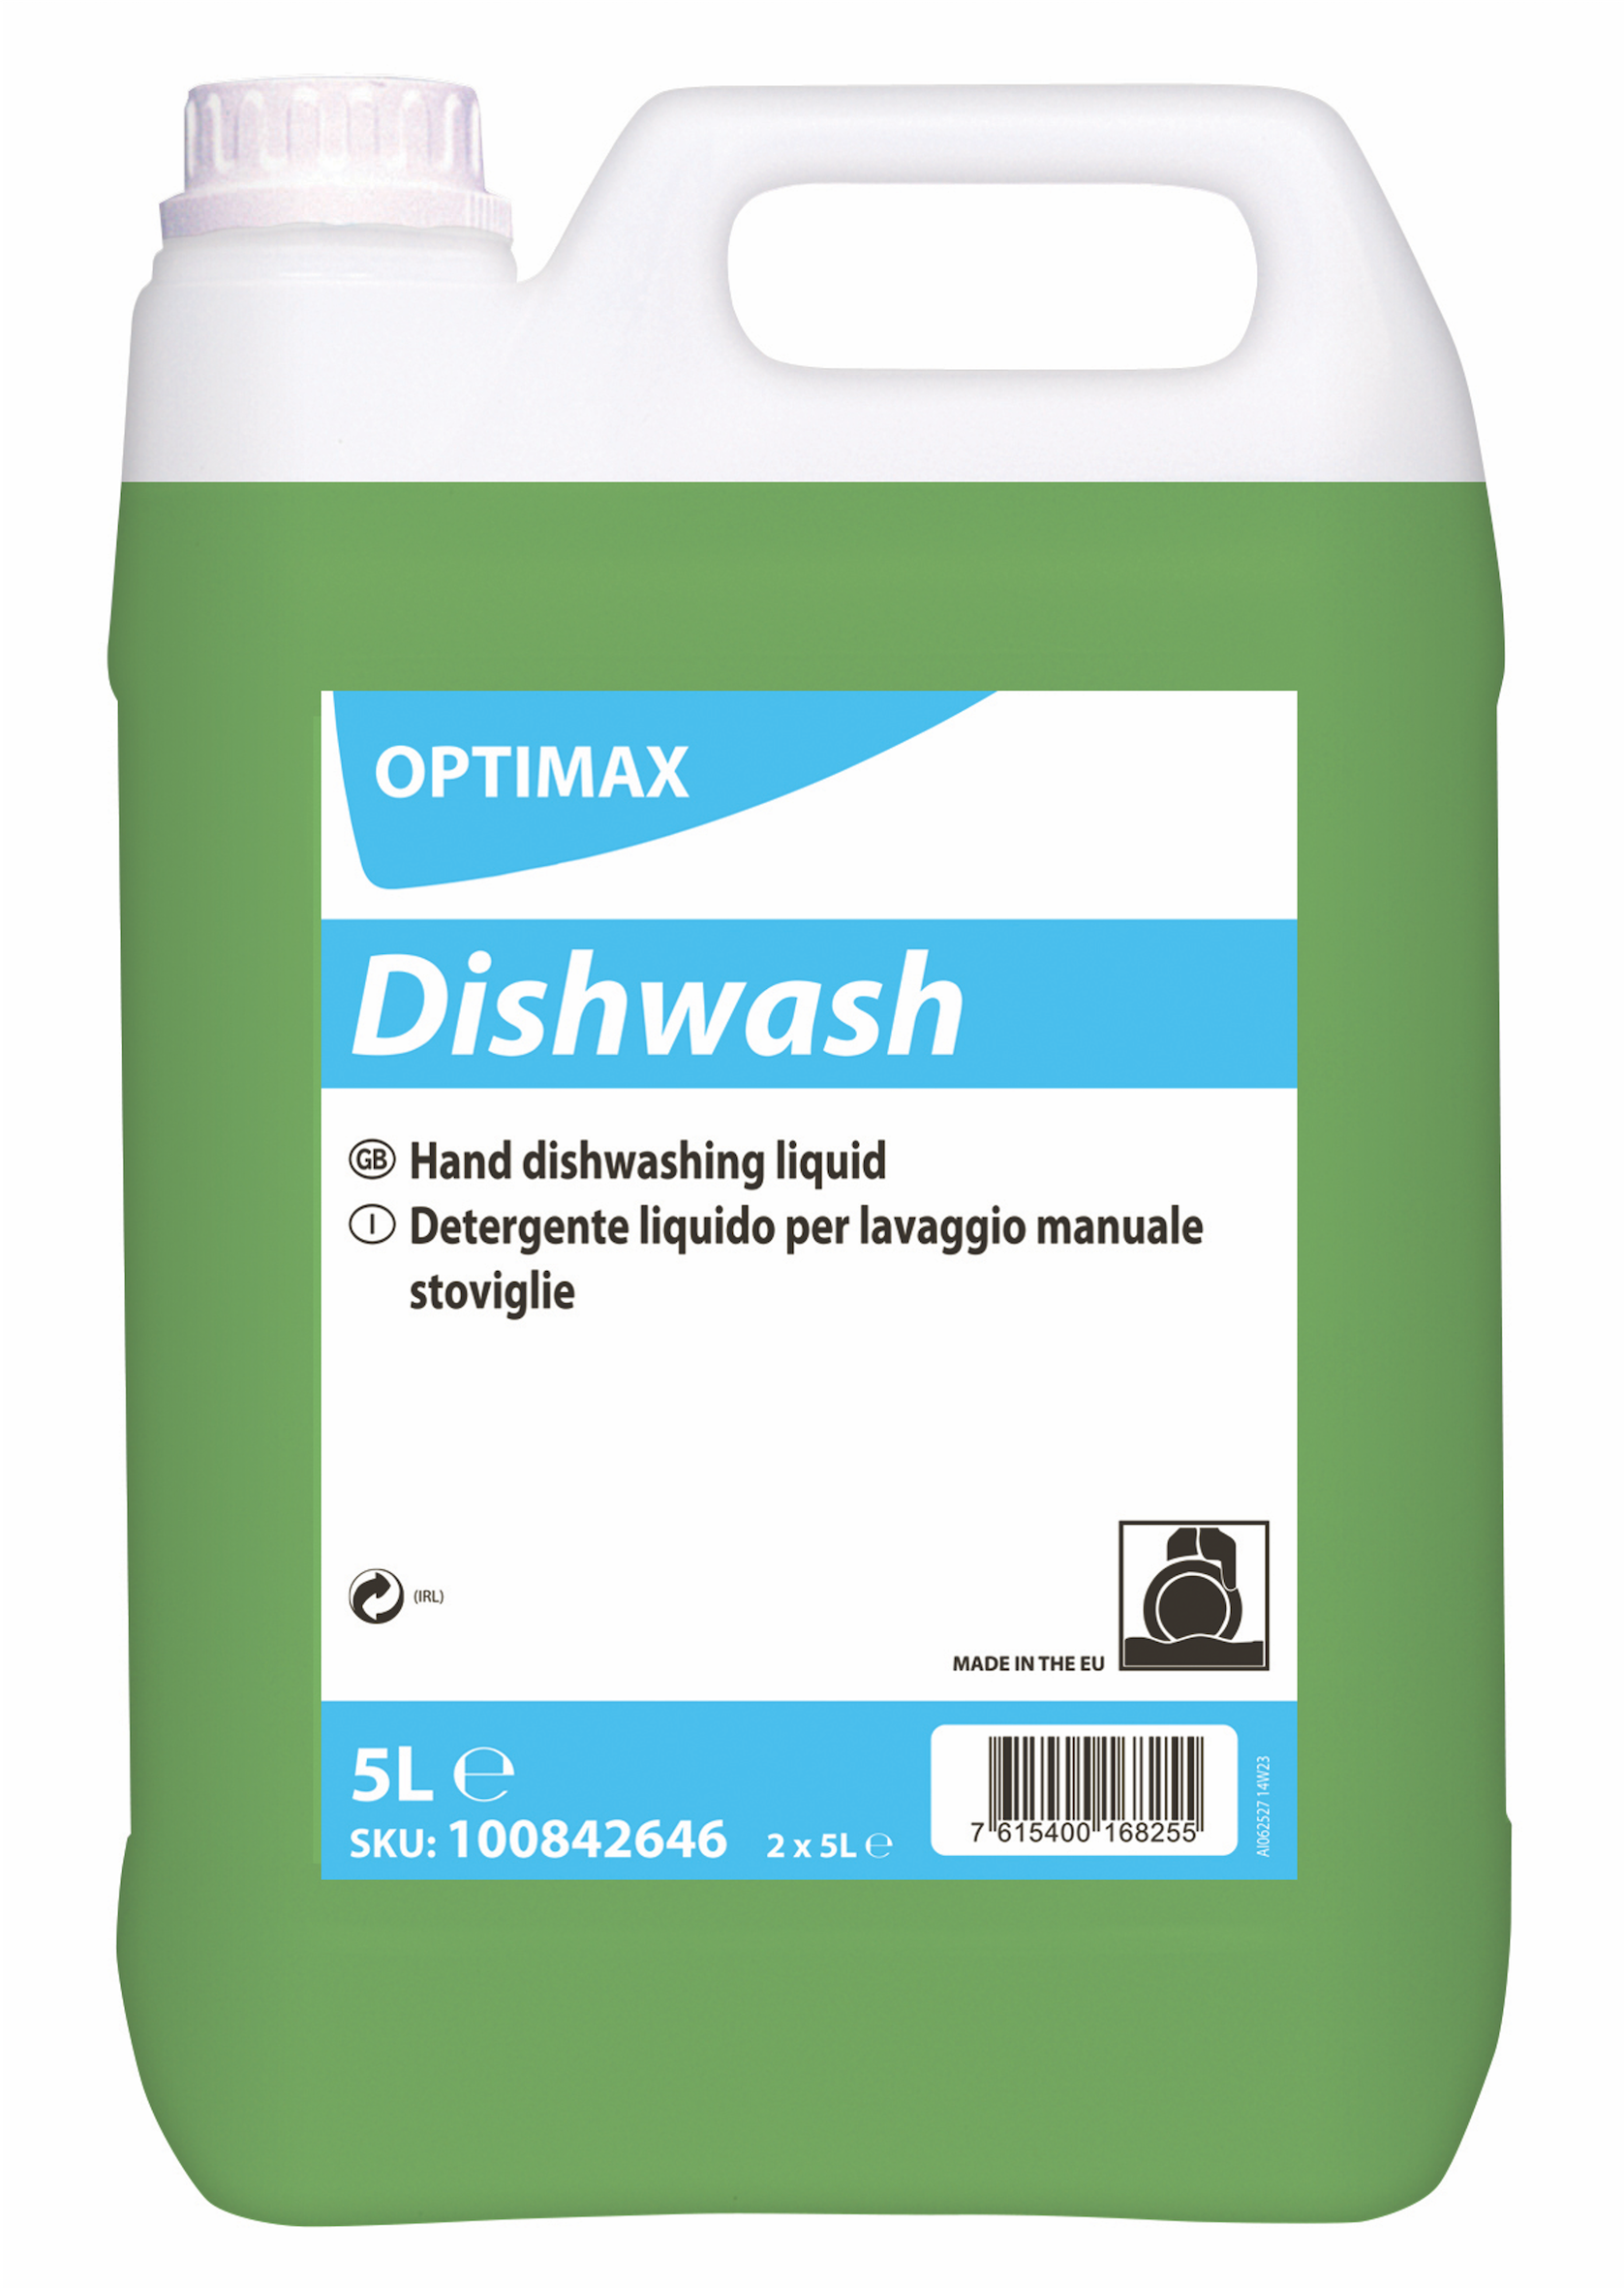 OPTIMAX Dishwash 2x5l